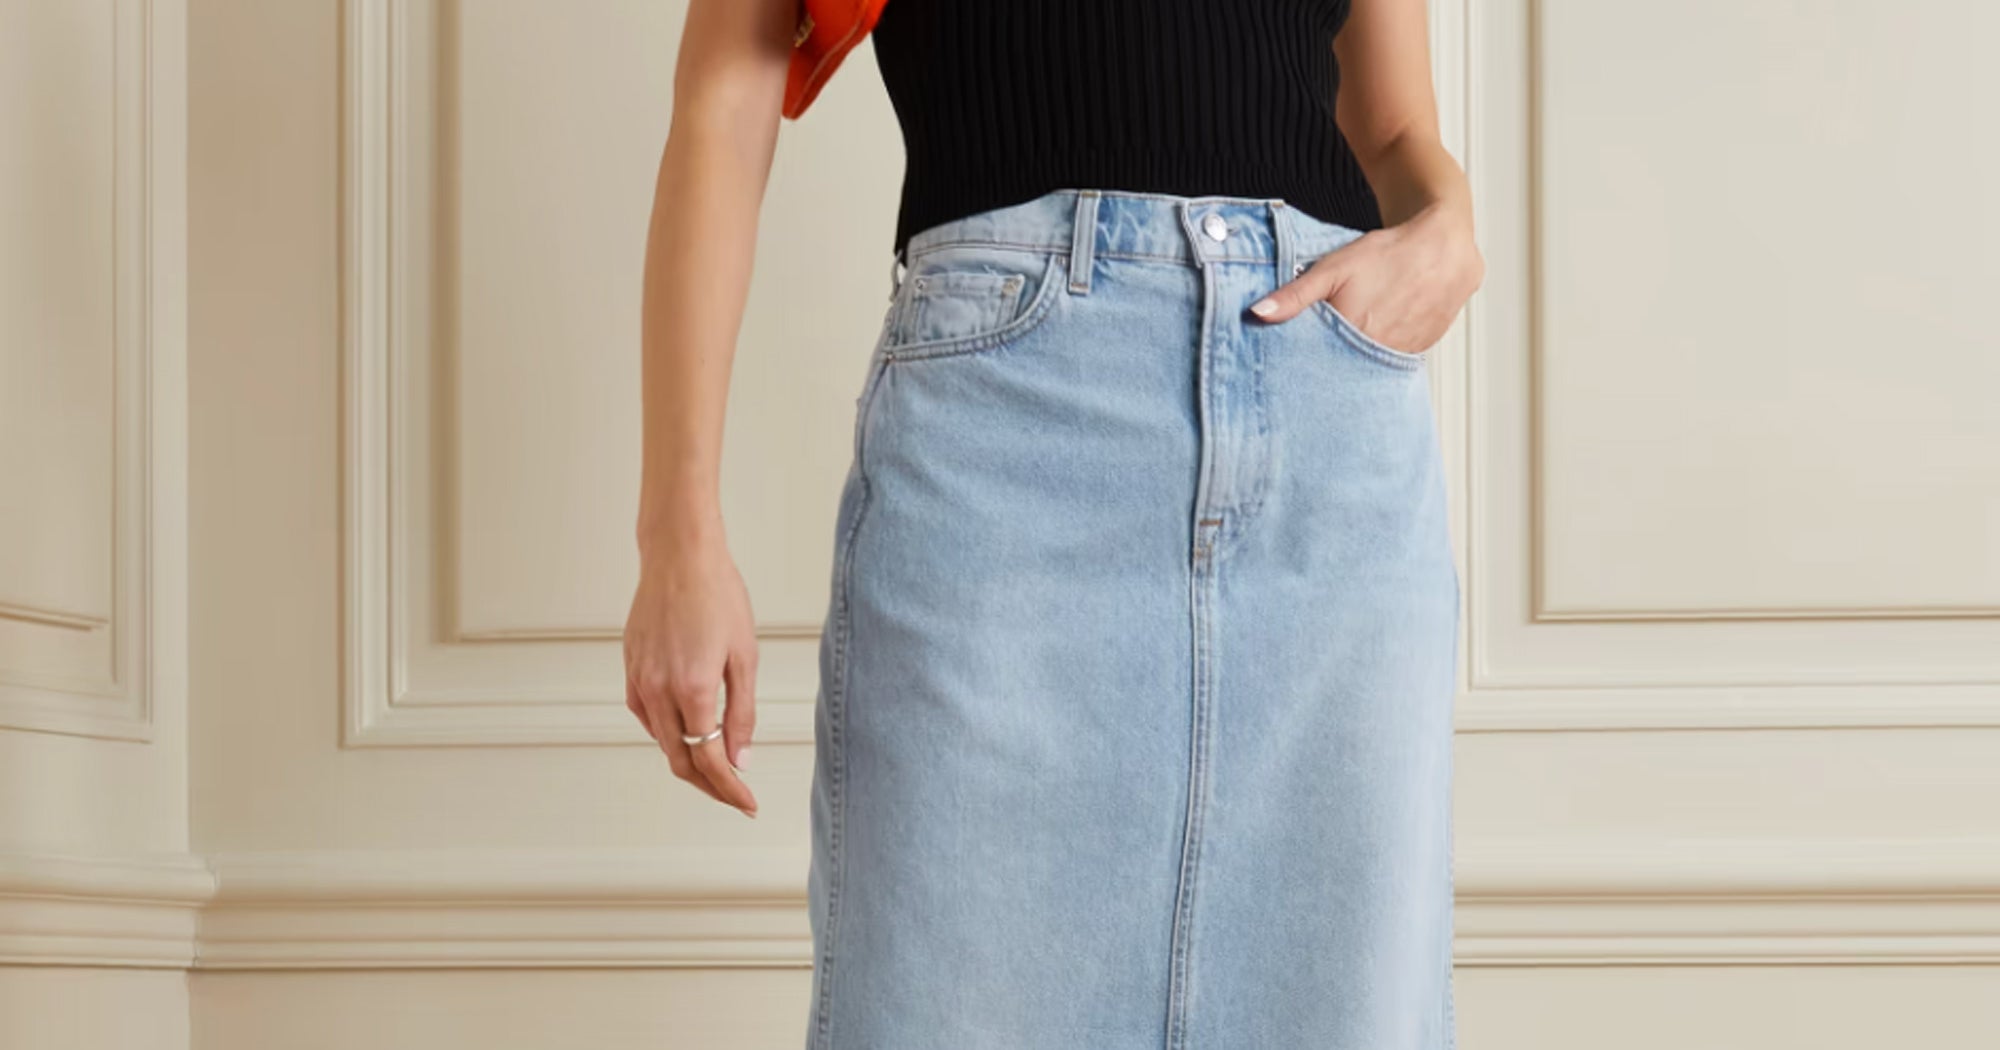 Skirt Women Spring Summer Cotton A-line High-waist Button Denim